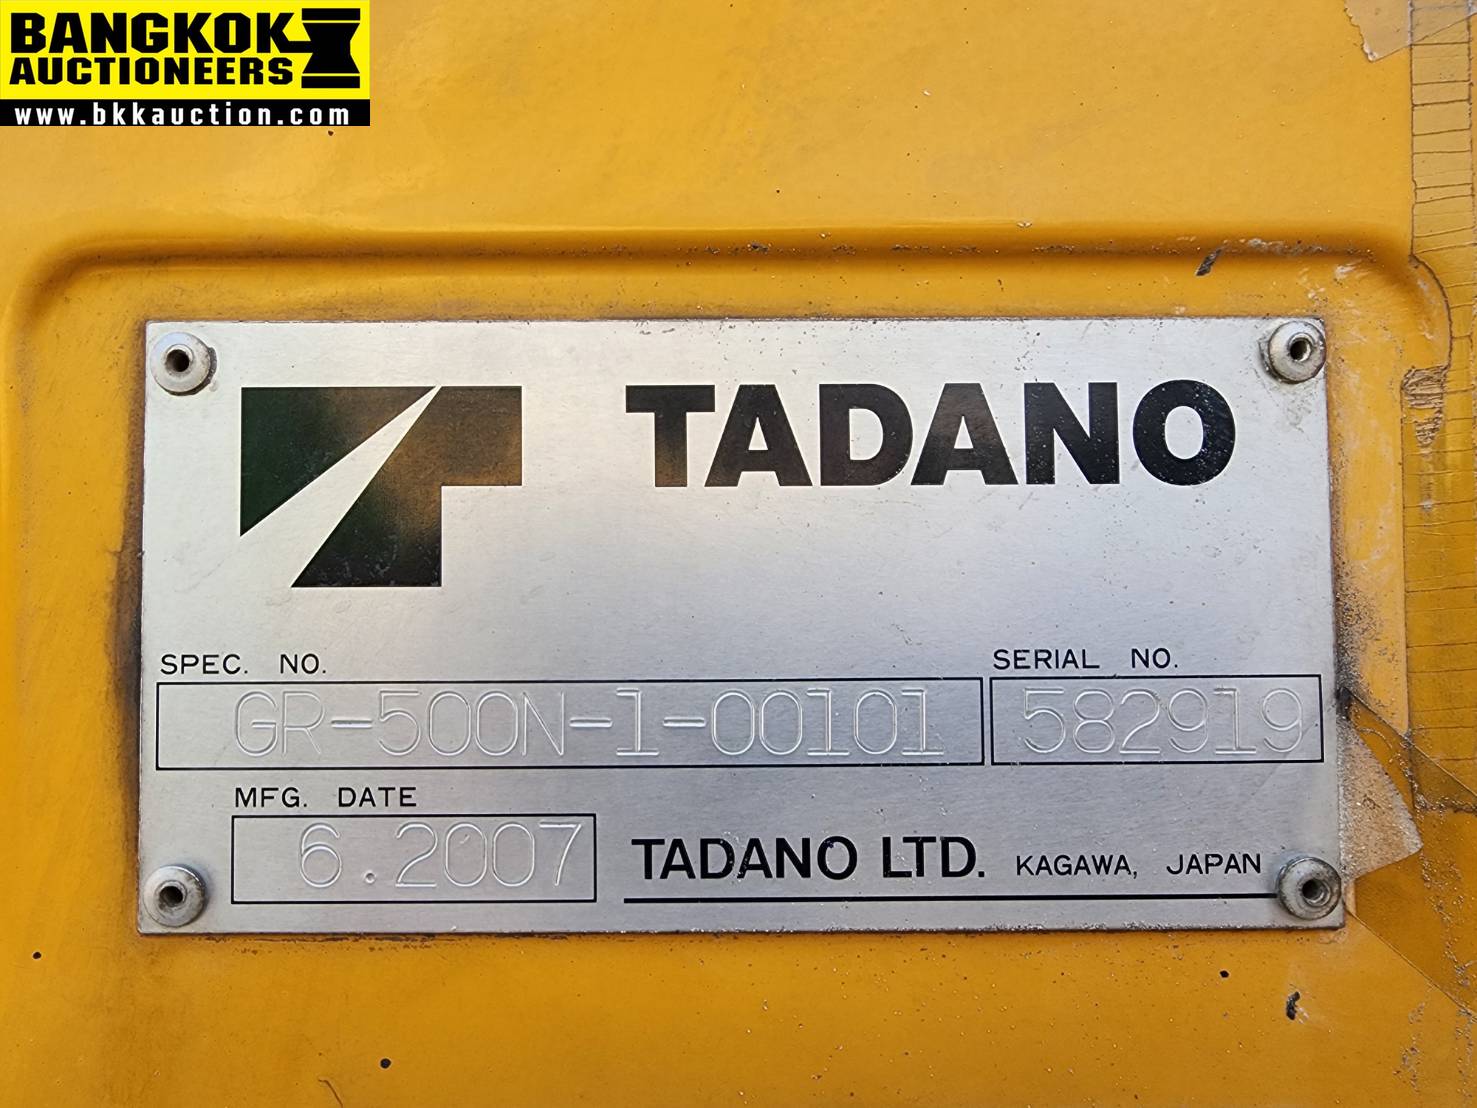 รถเครน TADANO-GR500N-1-582919